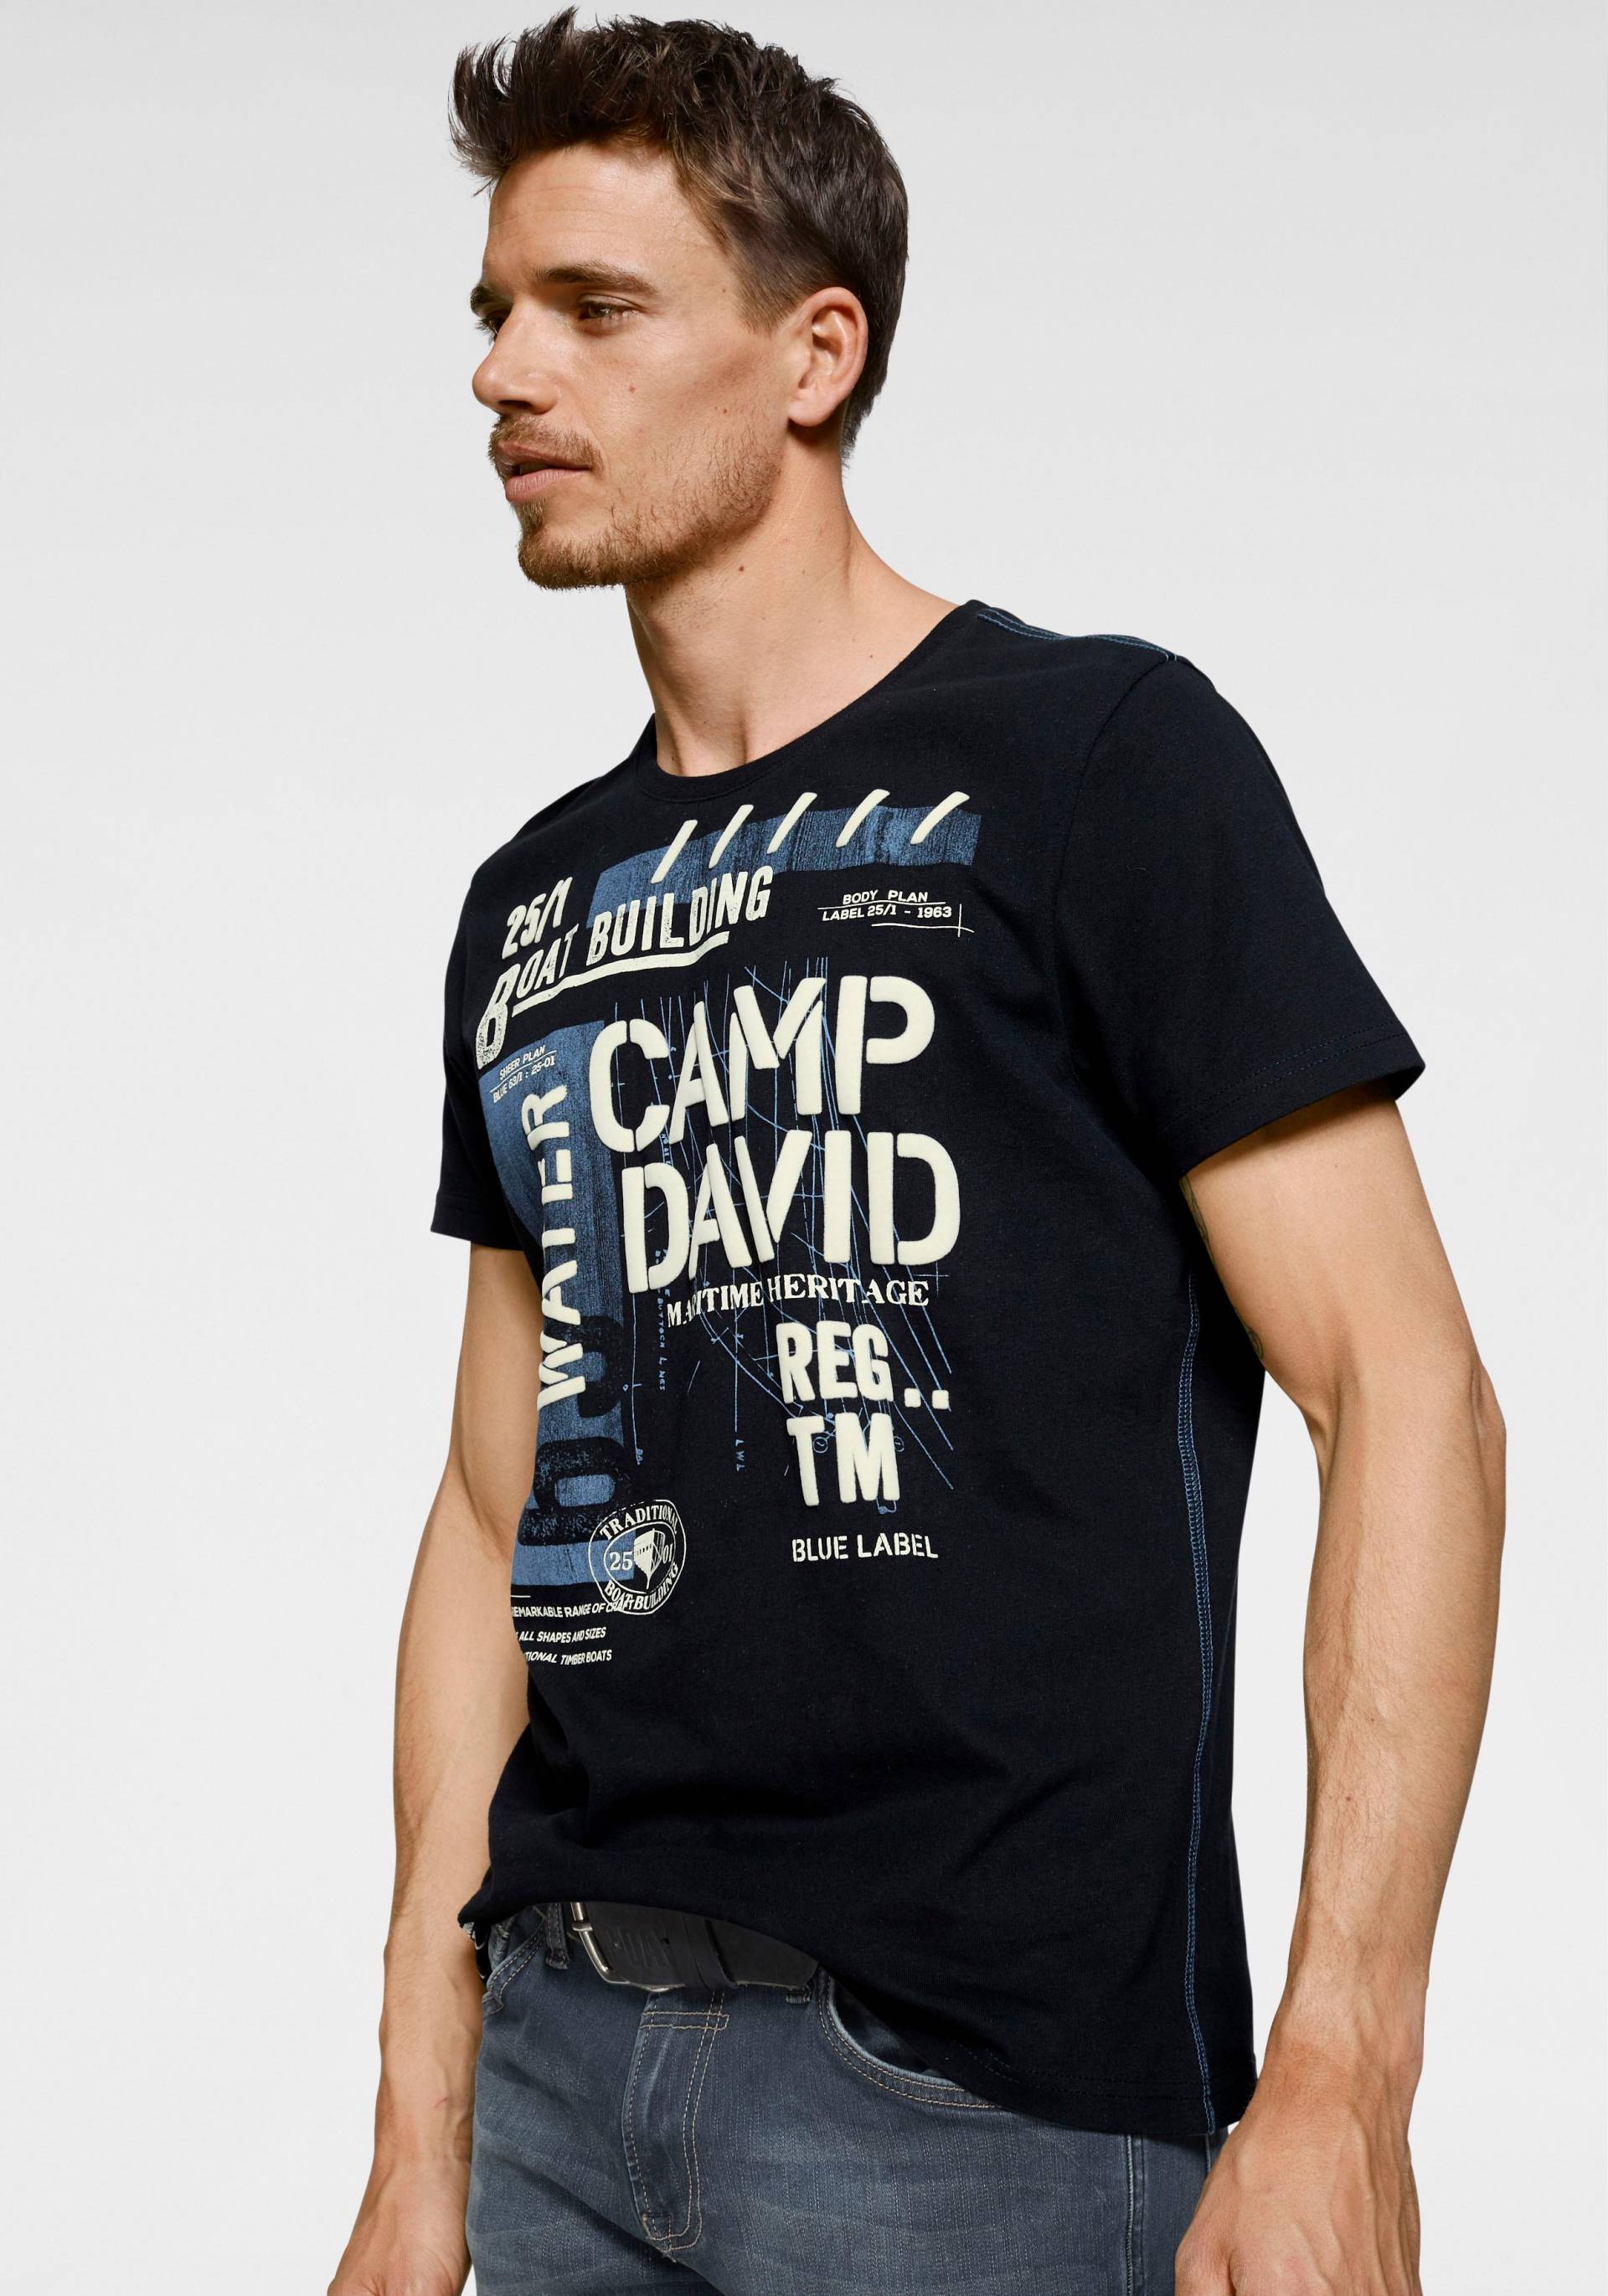 CAMP DAVID T-Shirt, mit markantem Frontdruck von camp david